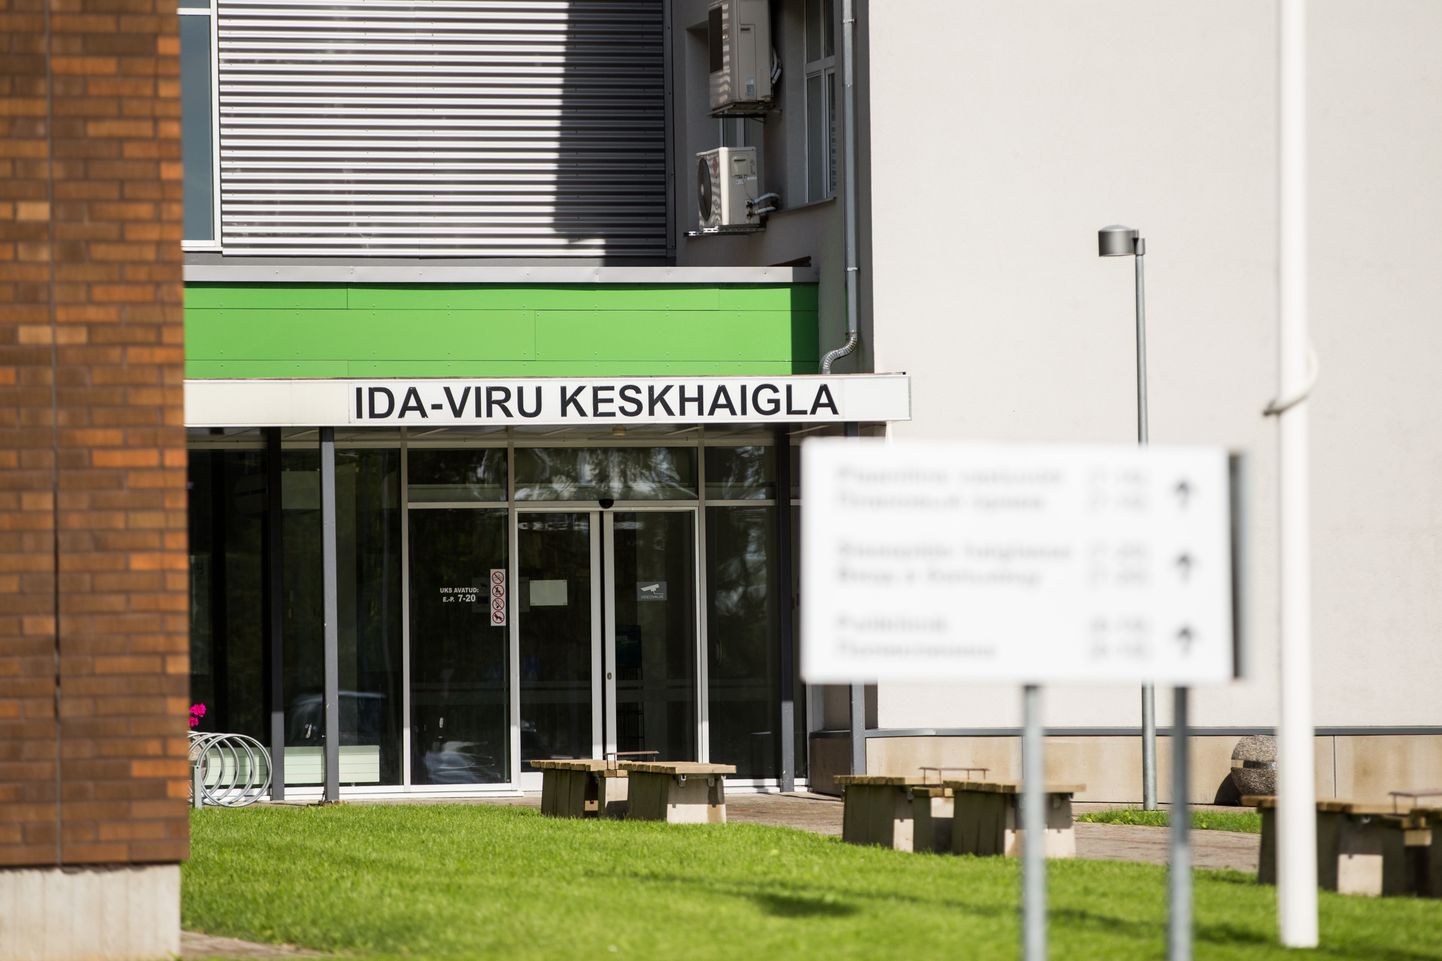 31.07.2016. JÕHVI
Ida-Viru keskhaigla
FOTO: EERO VABAMÄGI/POSTIMEES